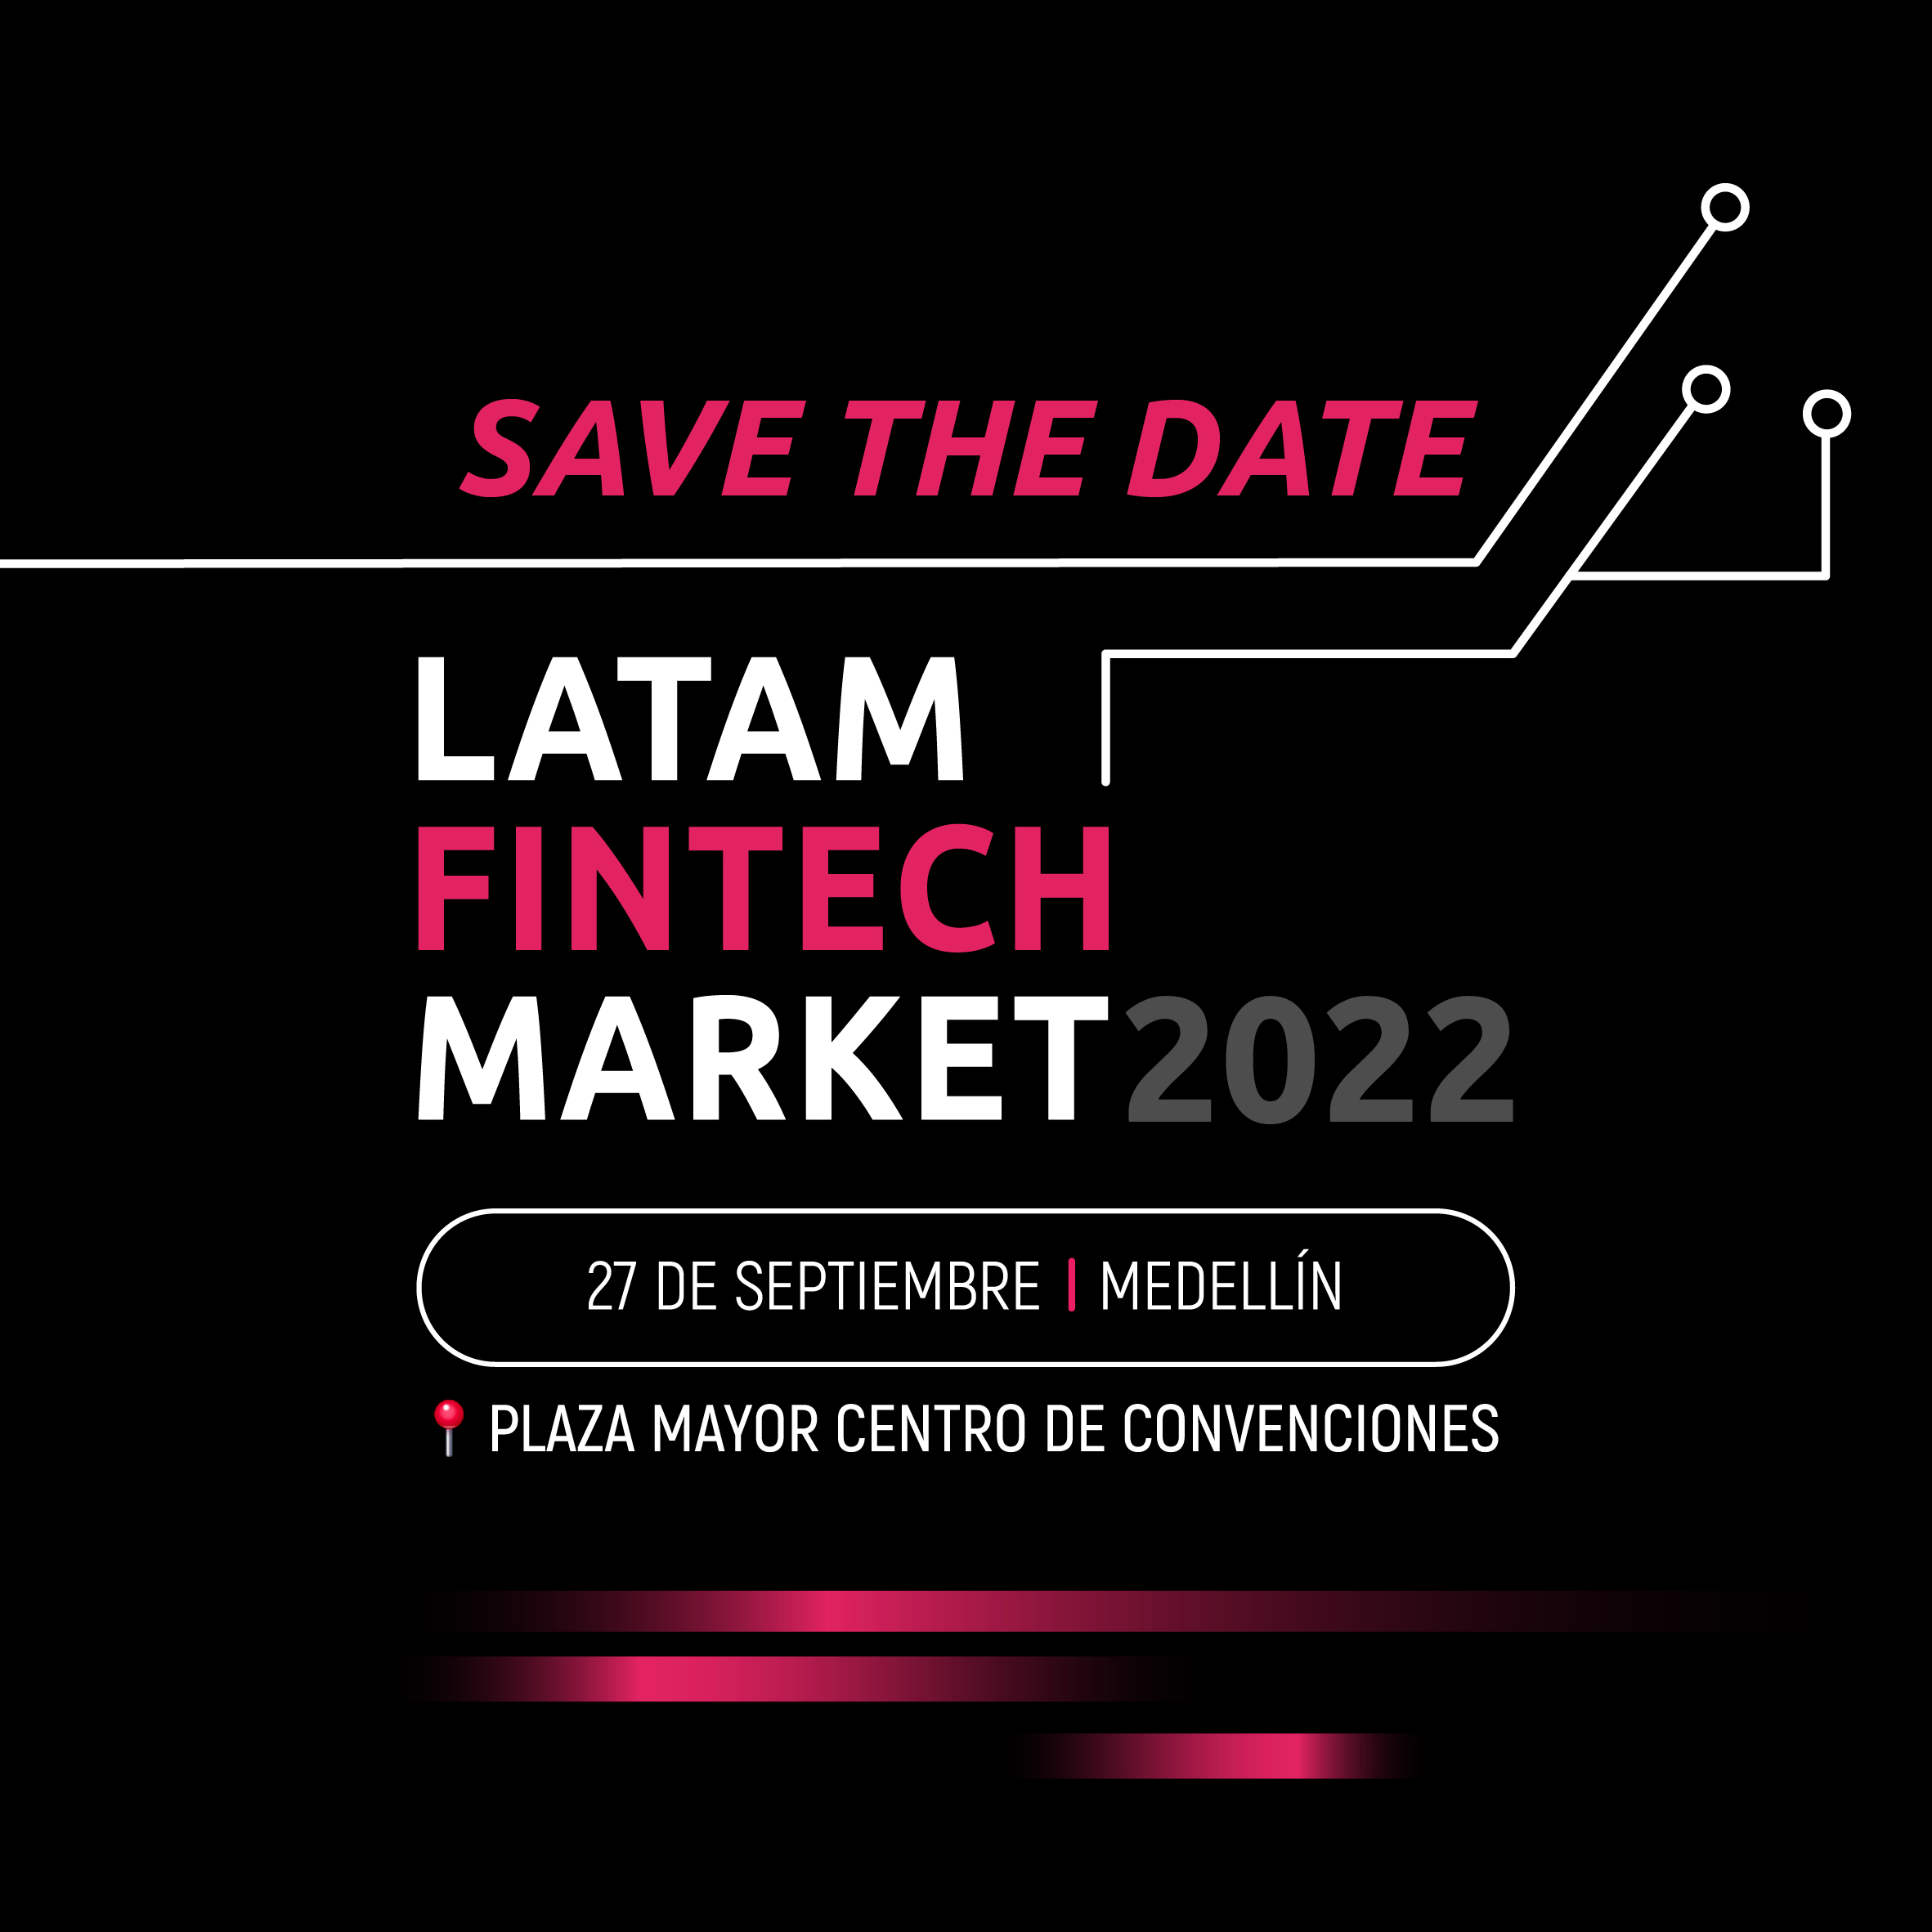 Latam Fintech Market 2022